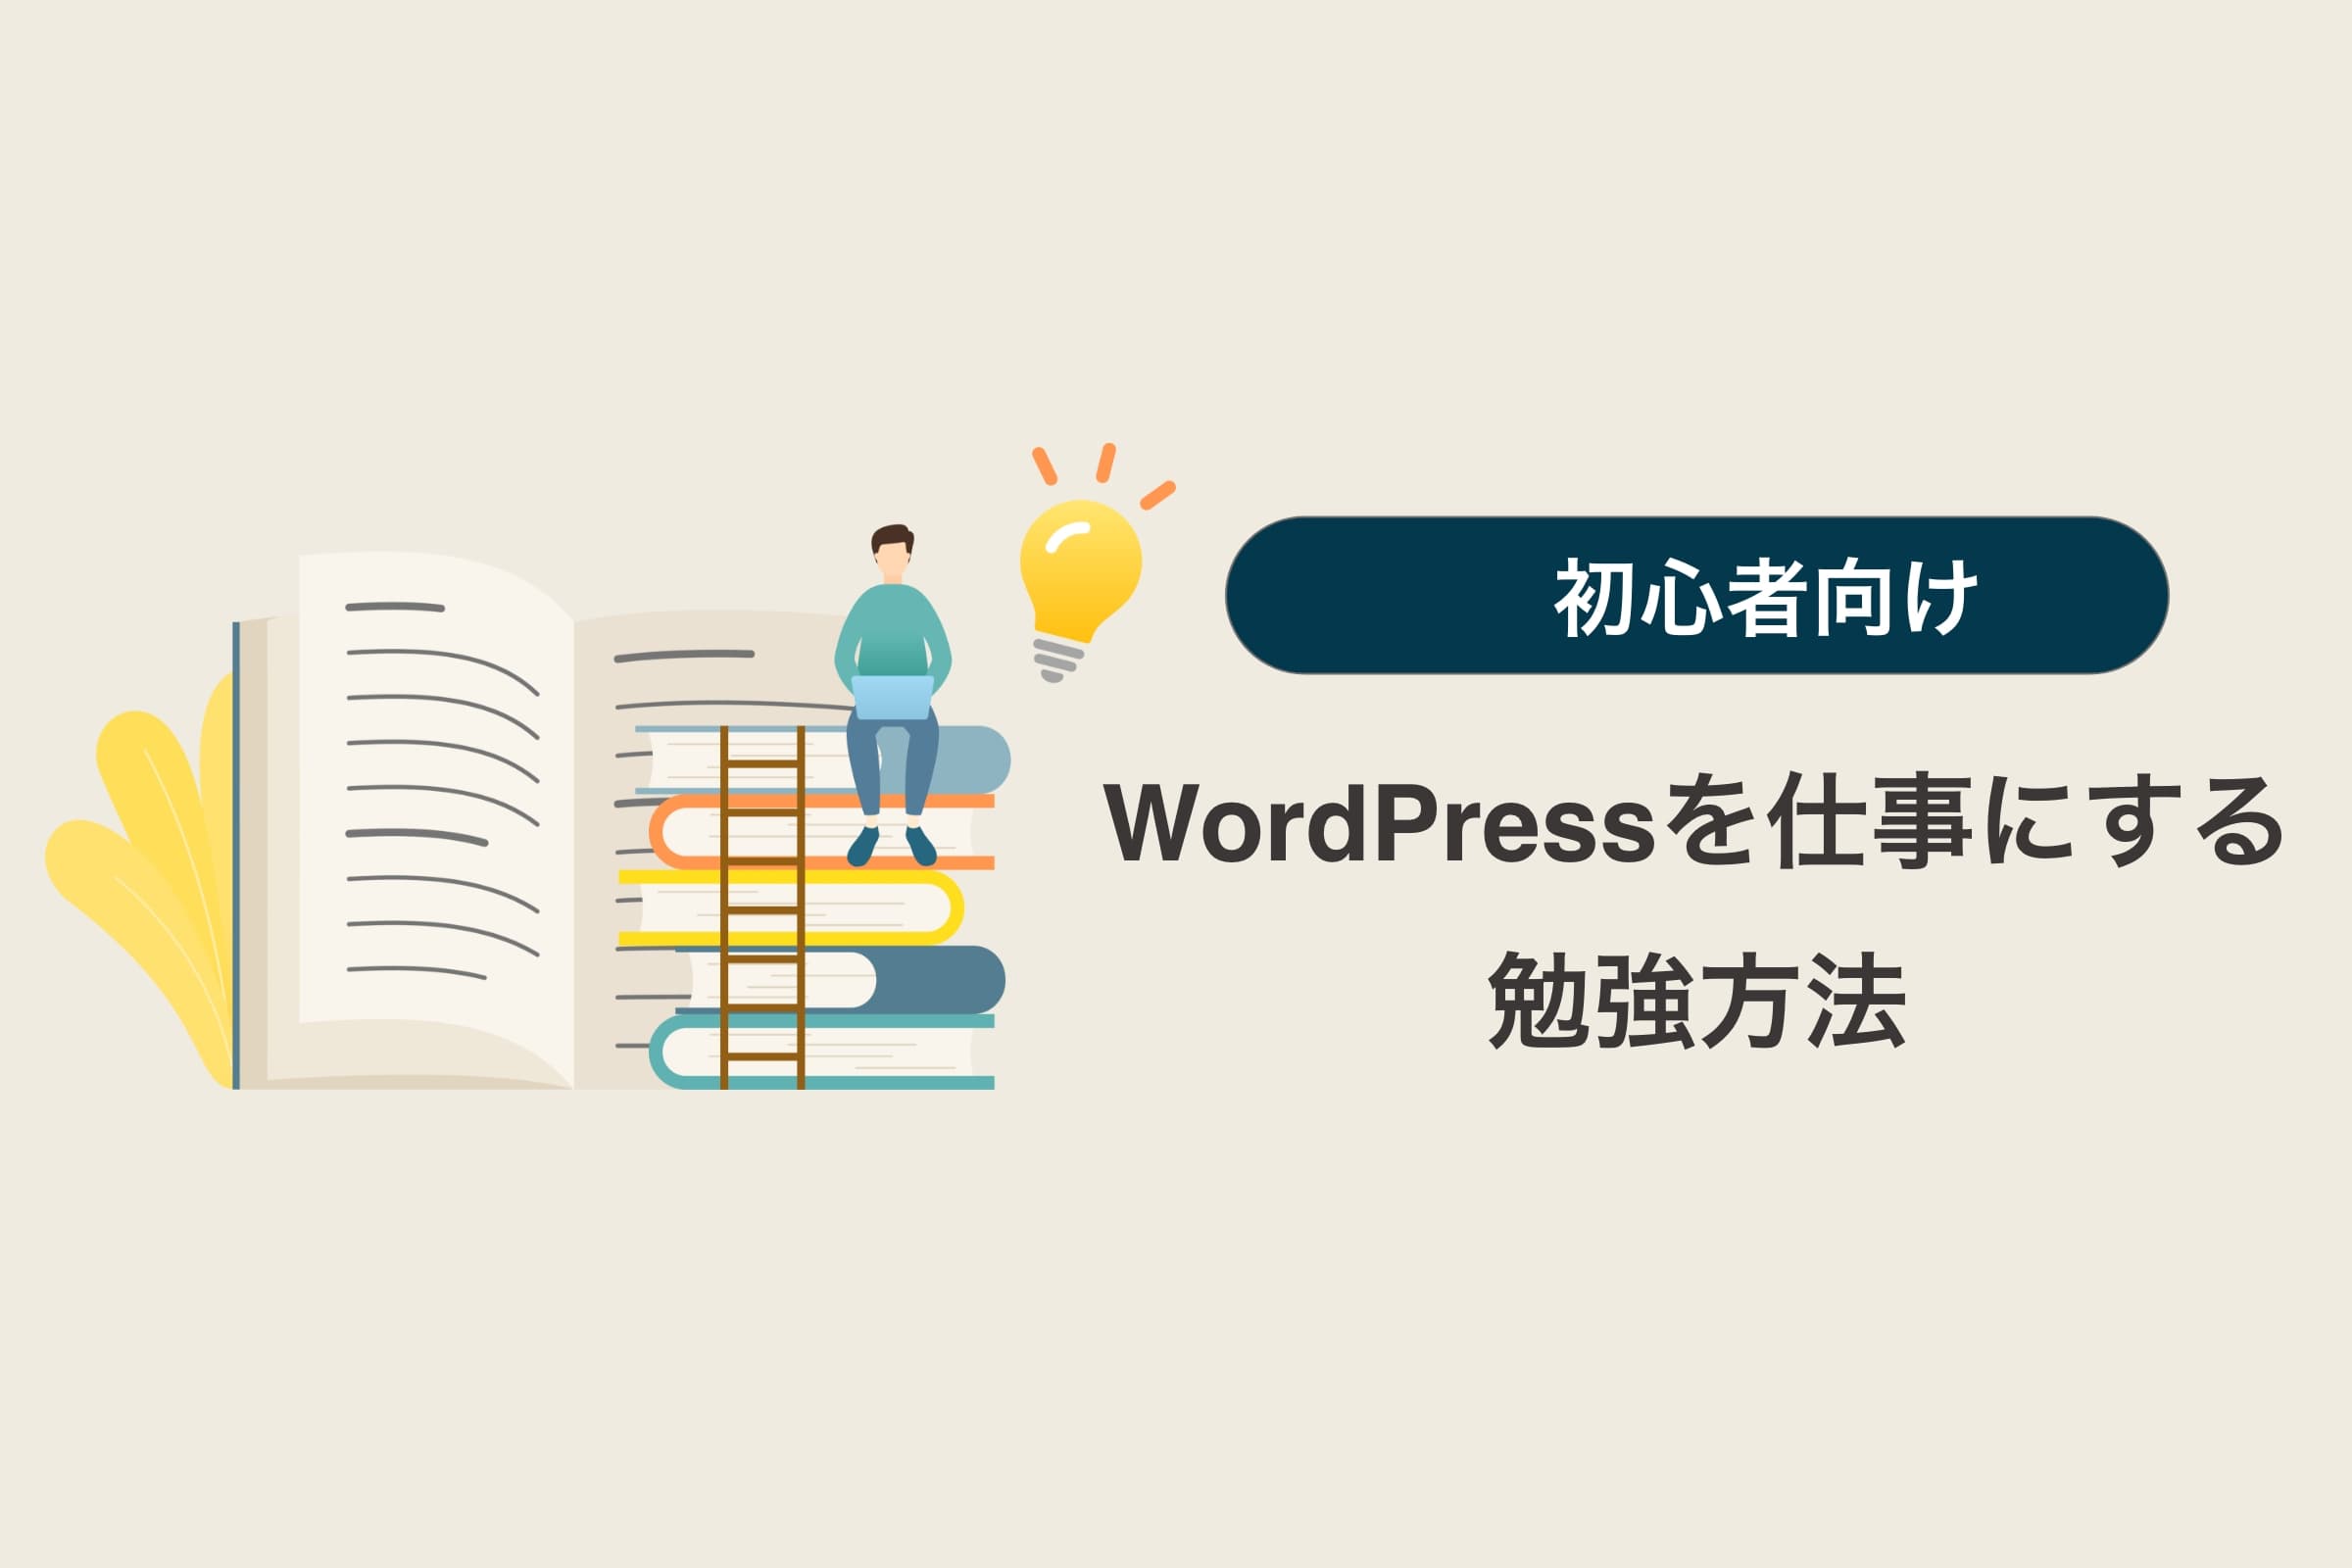 WordPressで仕事をするために勉強するべきこと【Web初学者必見】